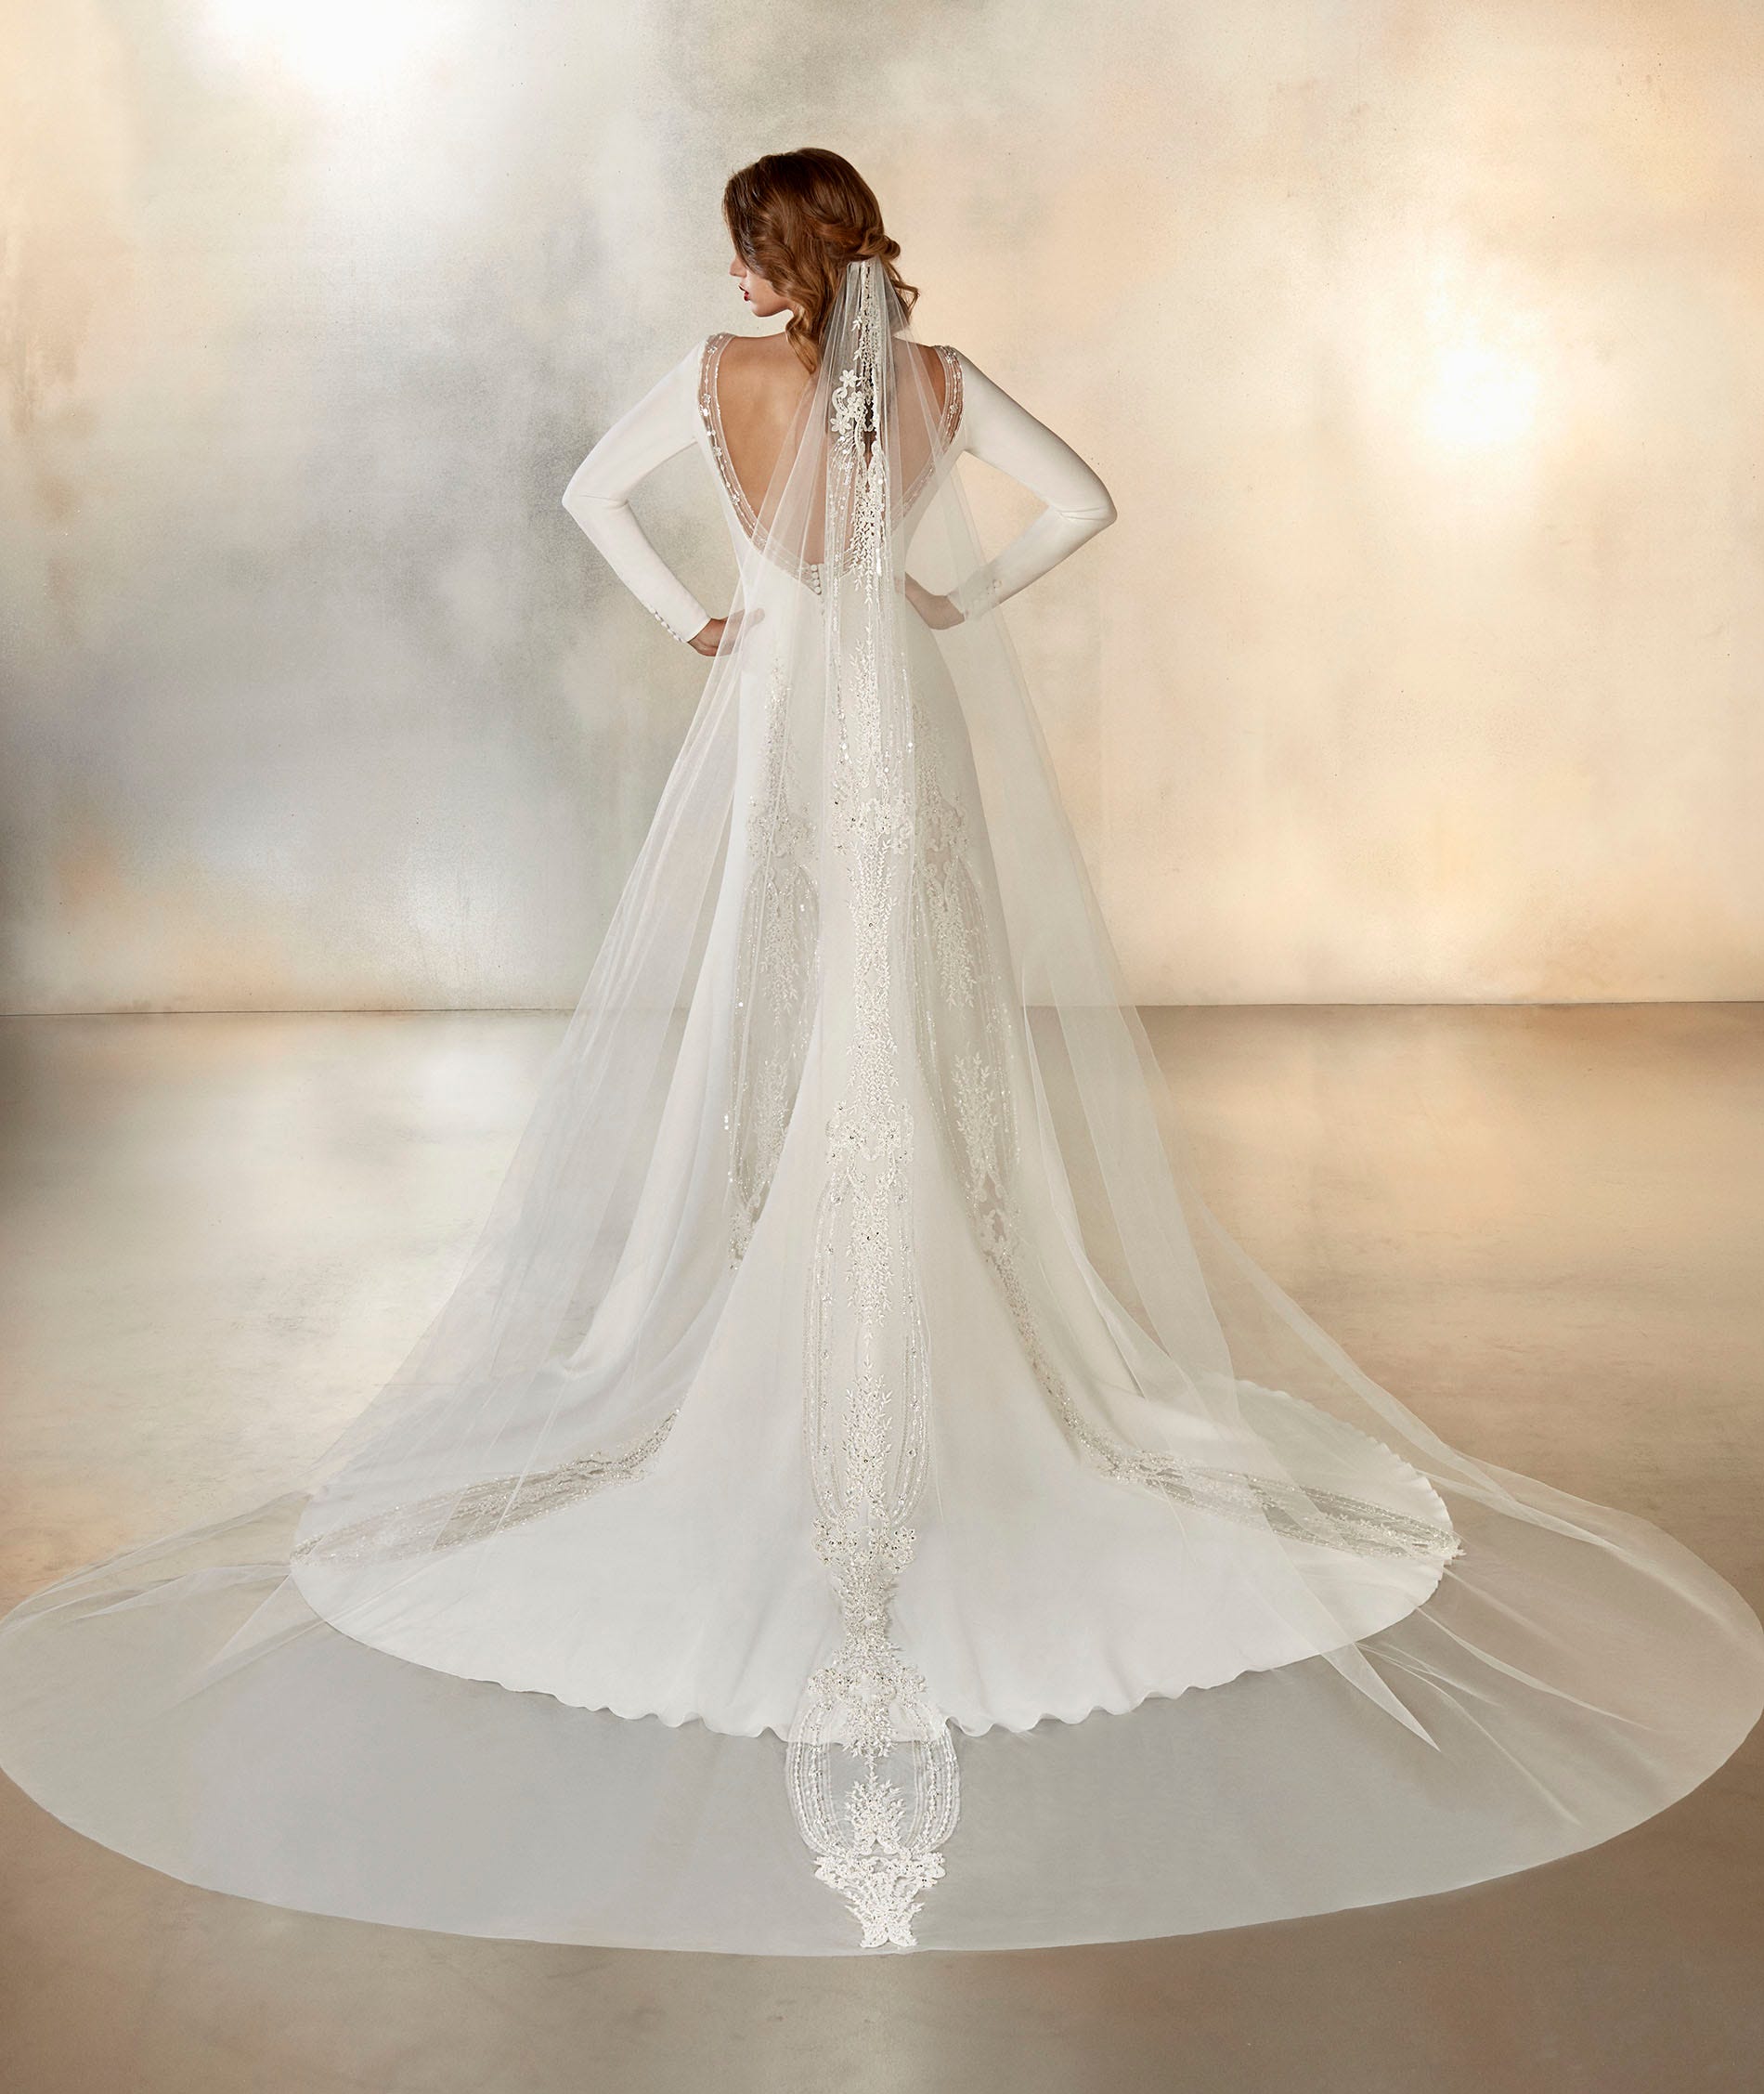 Cómo elegir el velo de novia adecuado para cada vestido